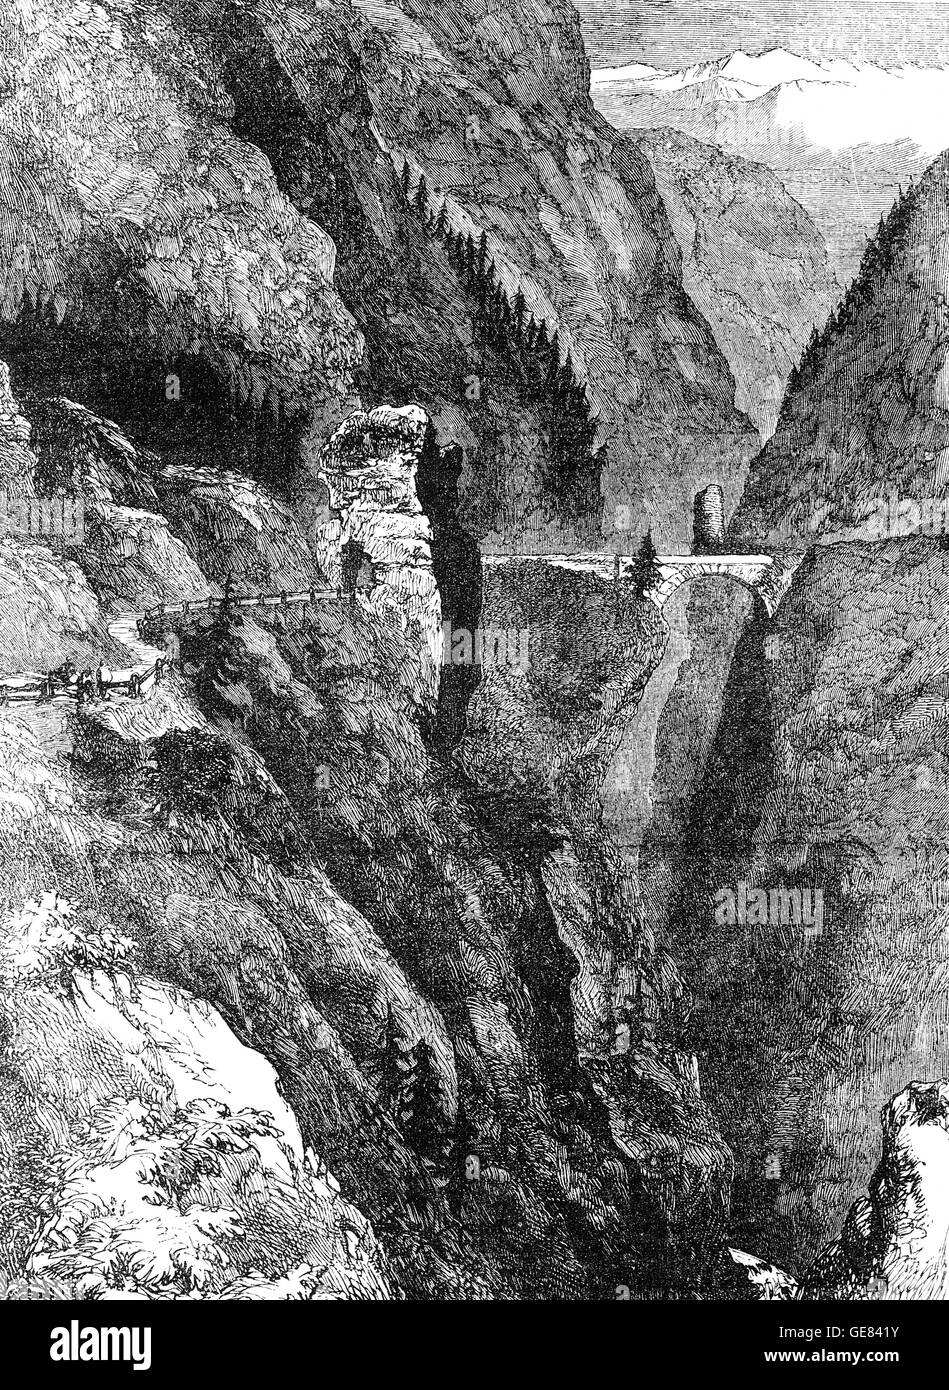 Obere au ou Via Mala est une ancienne et célèbre l'article d'un chemin le long de la rivière entre Zillis-Reischen Hinterrhein et Thusis, dans le canton des Grisons en Suisse. Cette gorge étroite était l'obstacle le plus sérieux à l'approche à deux cols : le Splügen et le San Bernardino. Banque D'Images